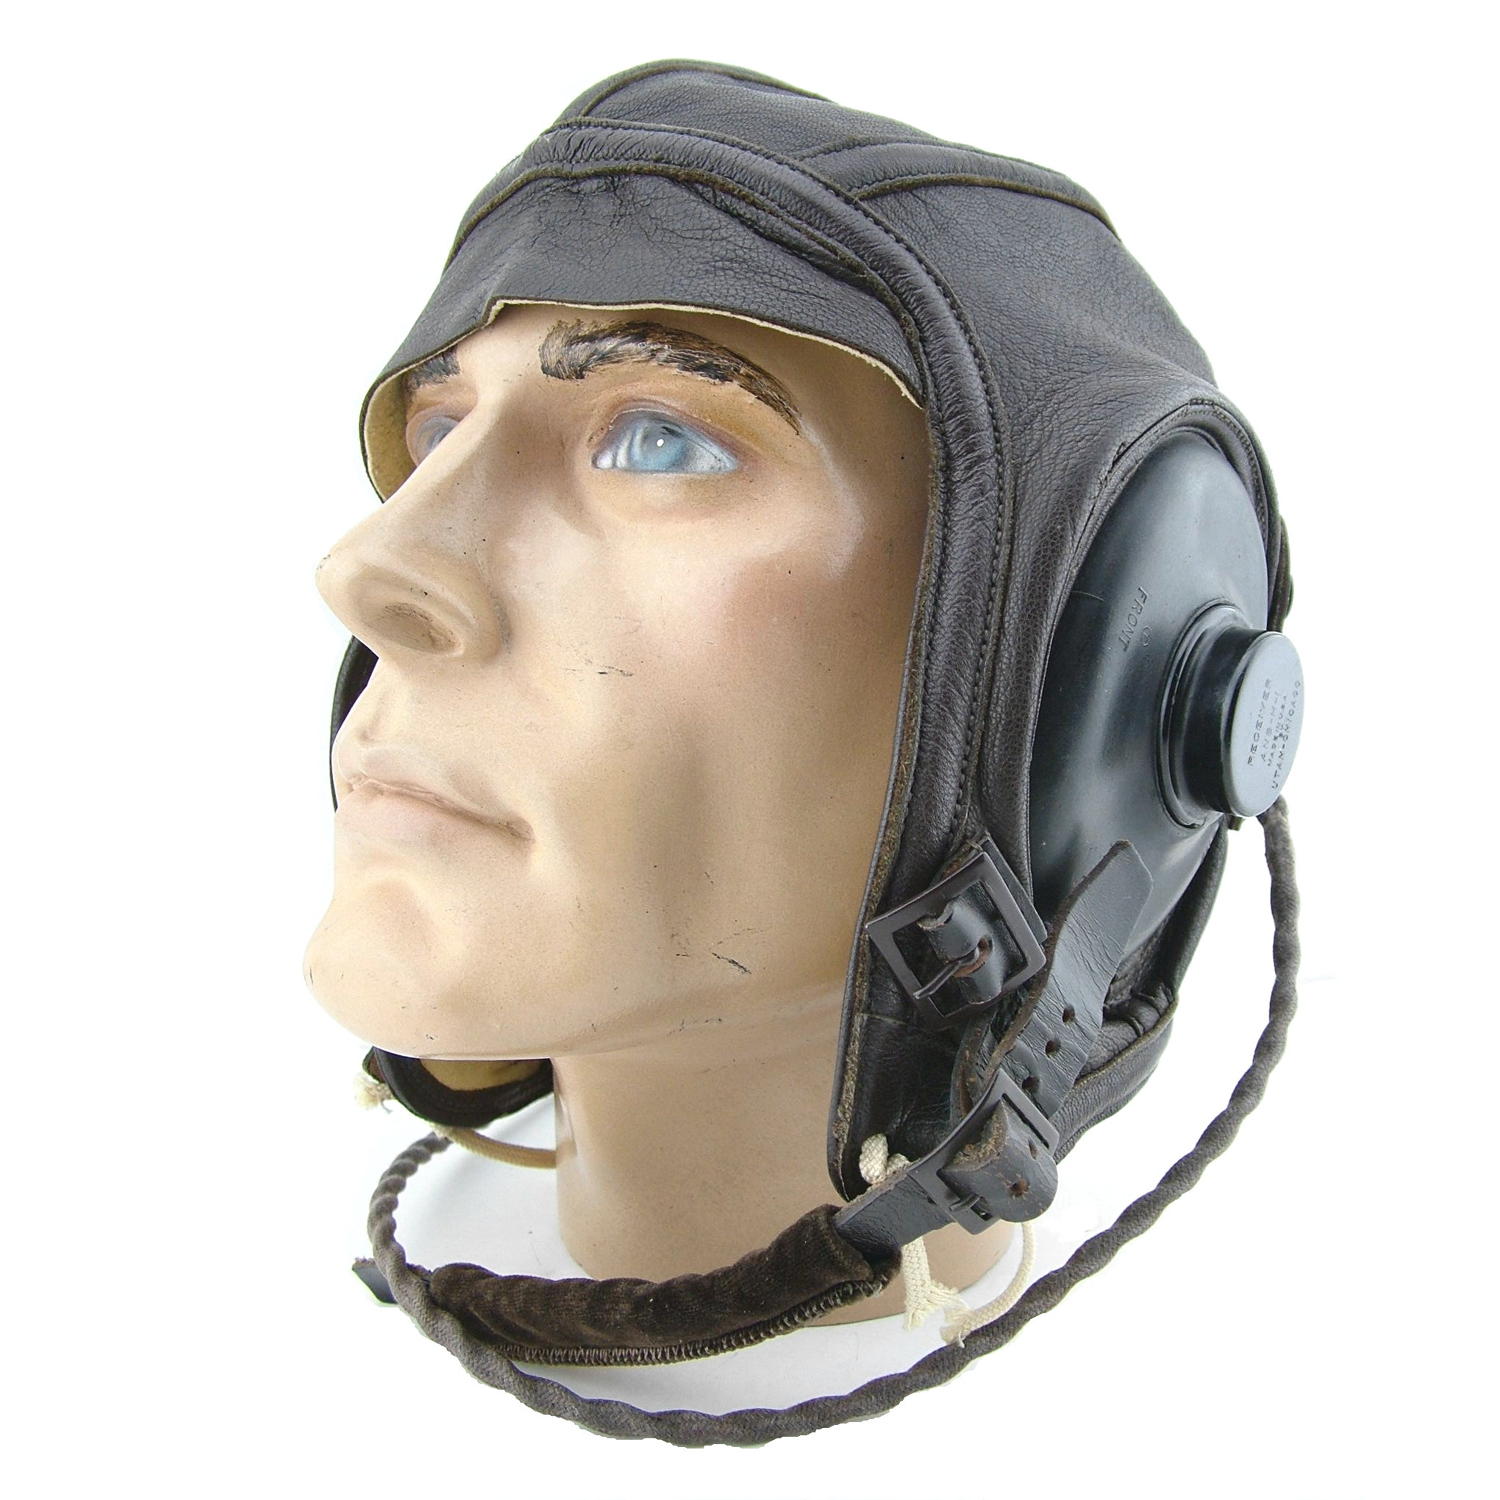 USN AN6540 flying helmet